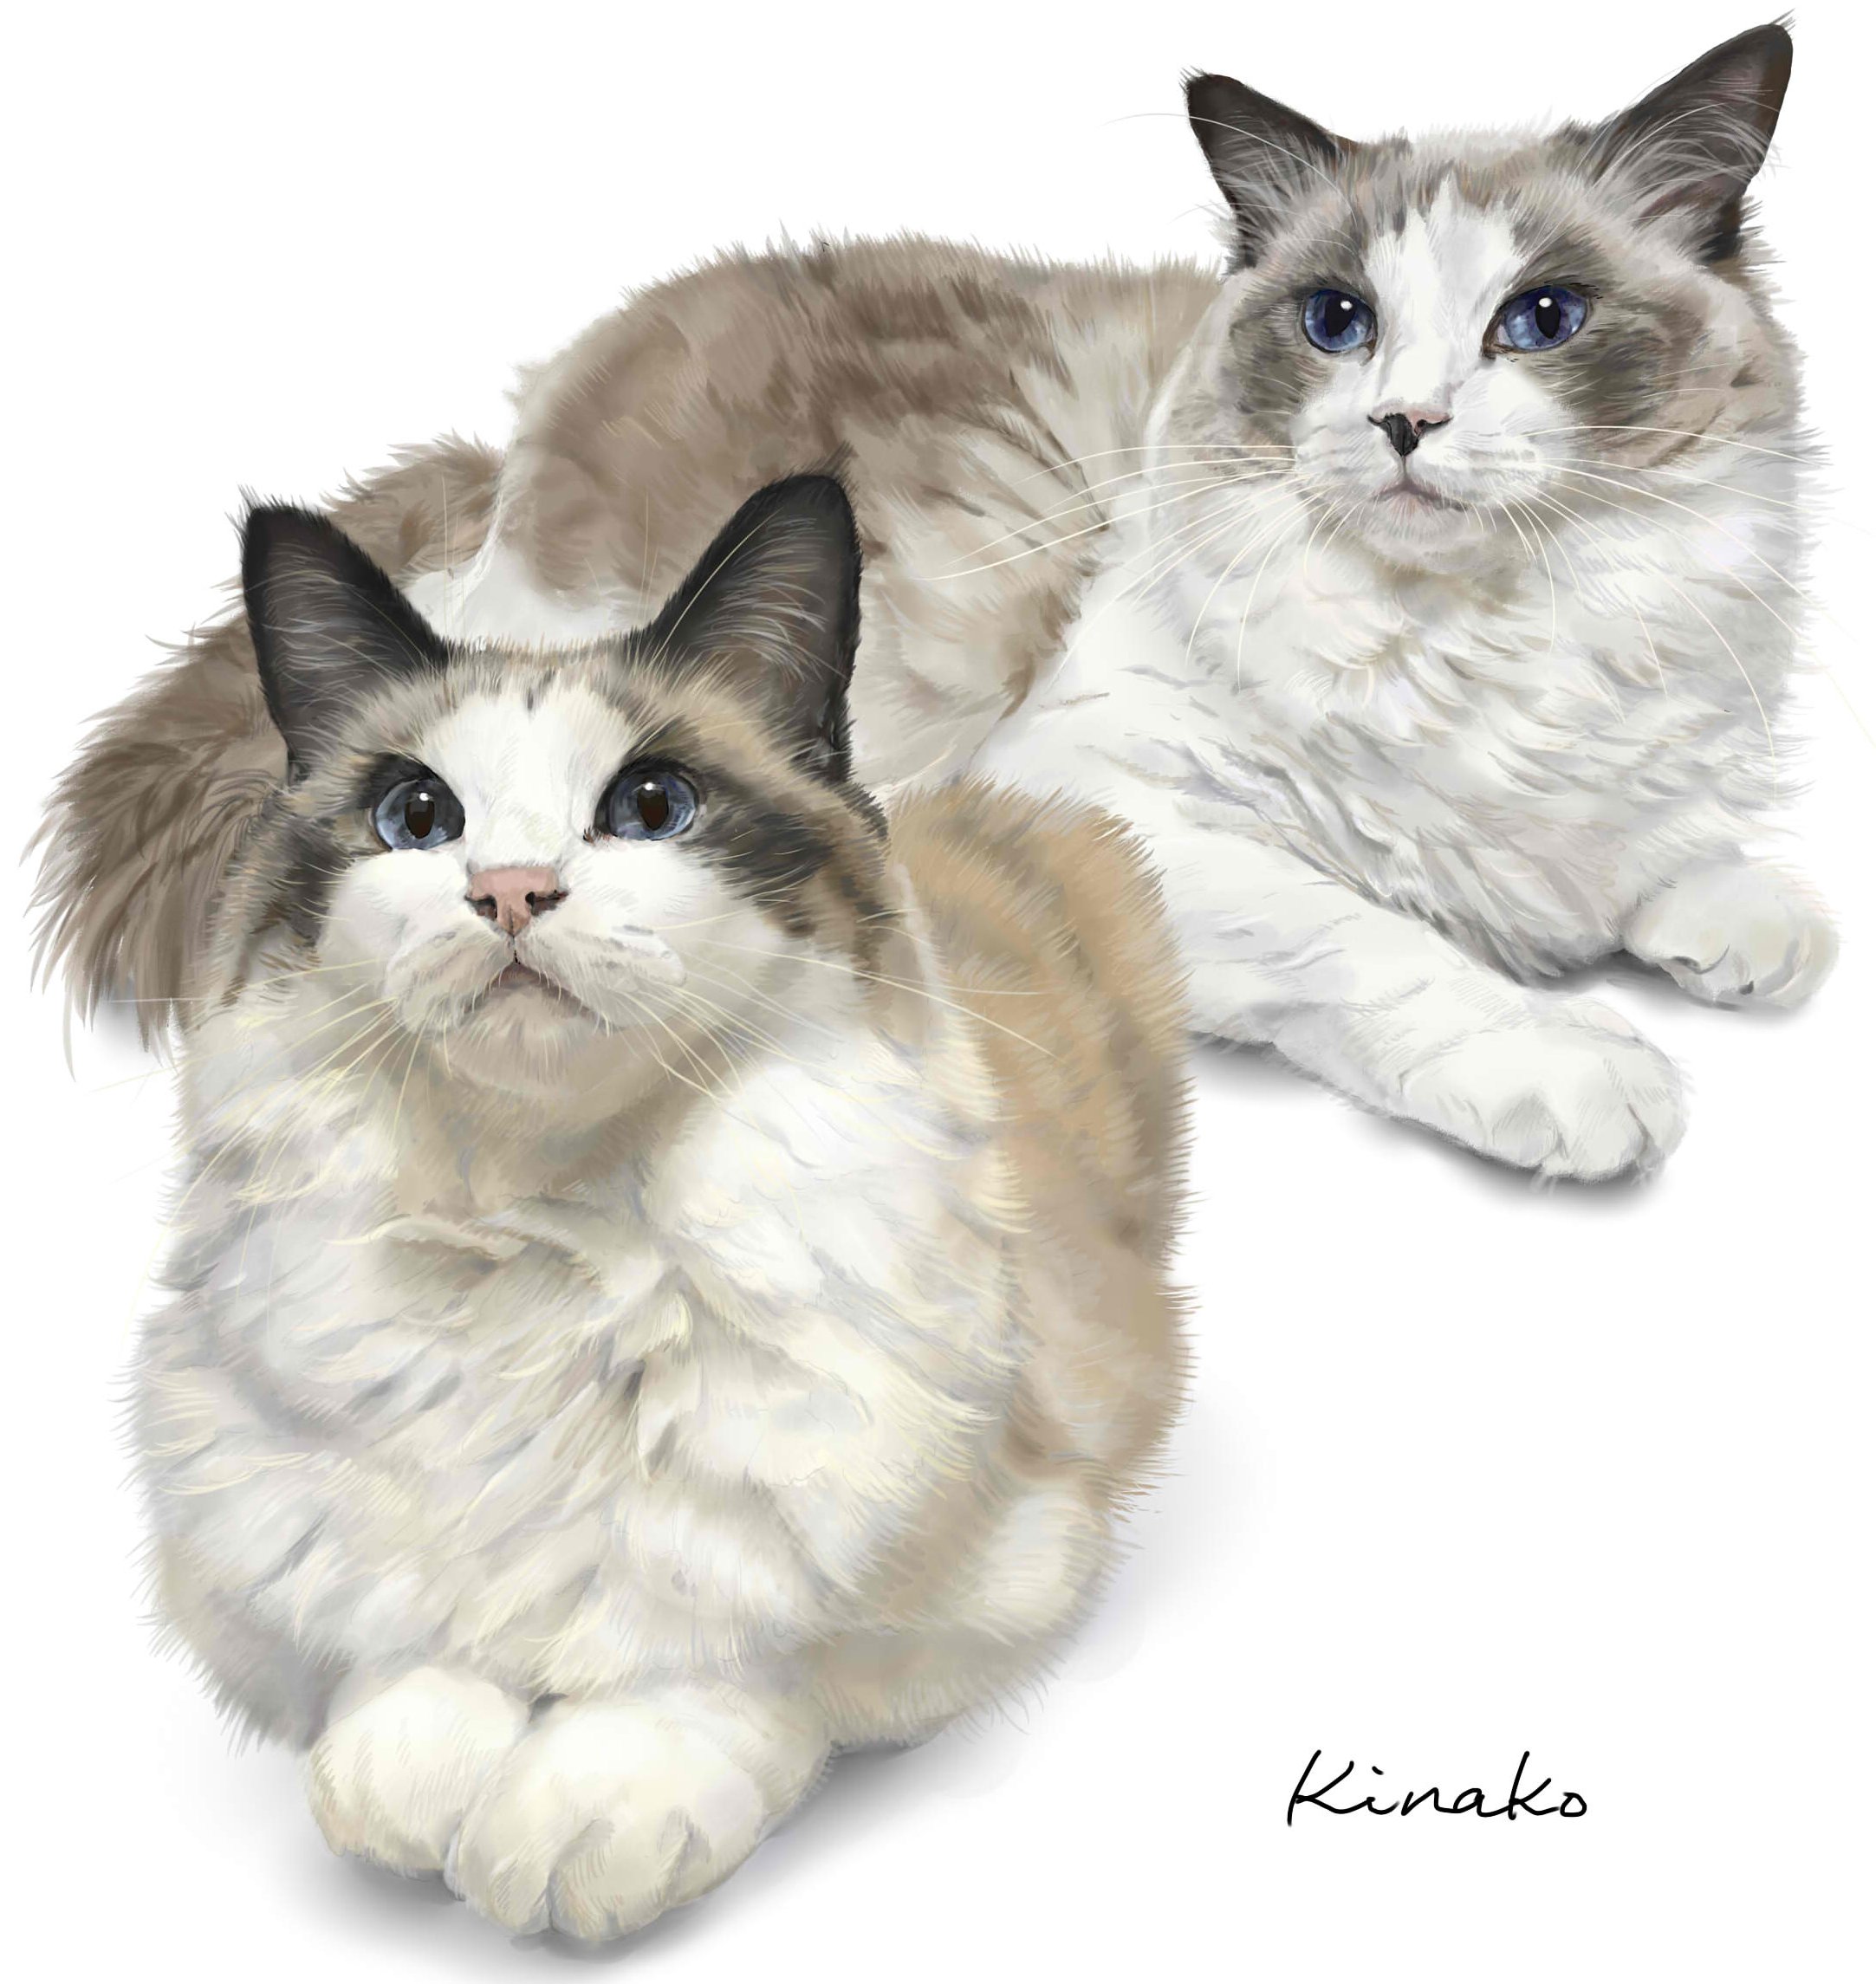 きなこ 猫の絵を描いています ぴめこ ラグドールさんのアルフレド君 レオナルド君 兄弟です 2匹を描いたので 並べてみました ゴージャスな美しい2匹です 猫絵 Cat Drawing 猫 イラスト 猫画 ラグドール T Co